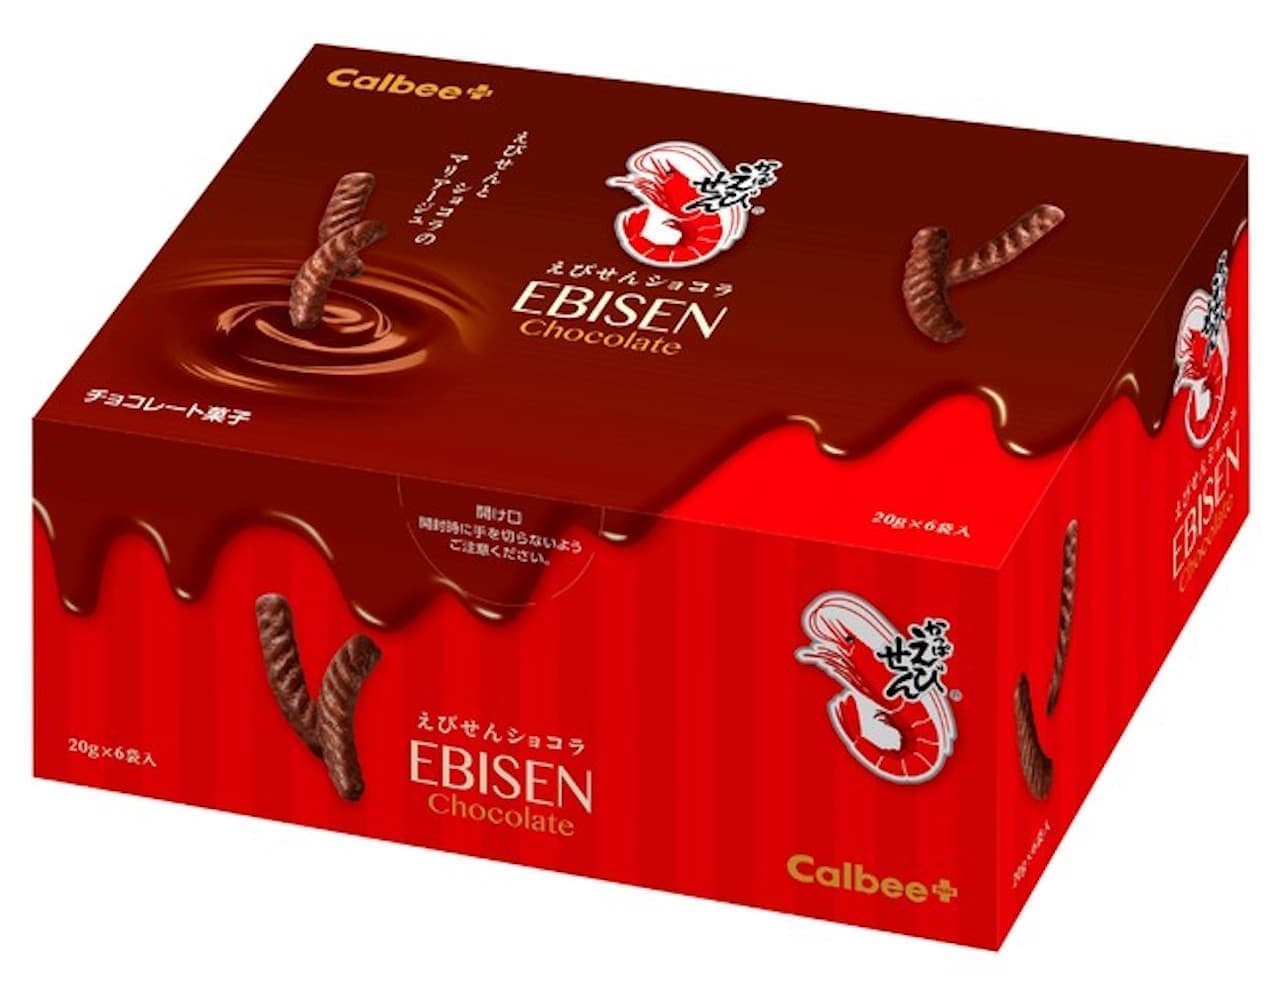 Limited quantity "Ebisen Chocolat" from Calbee Plus